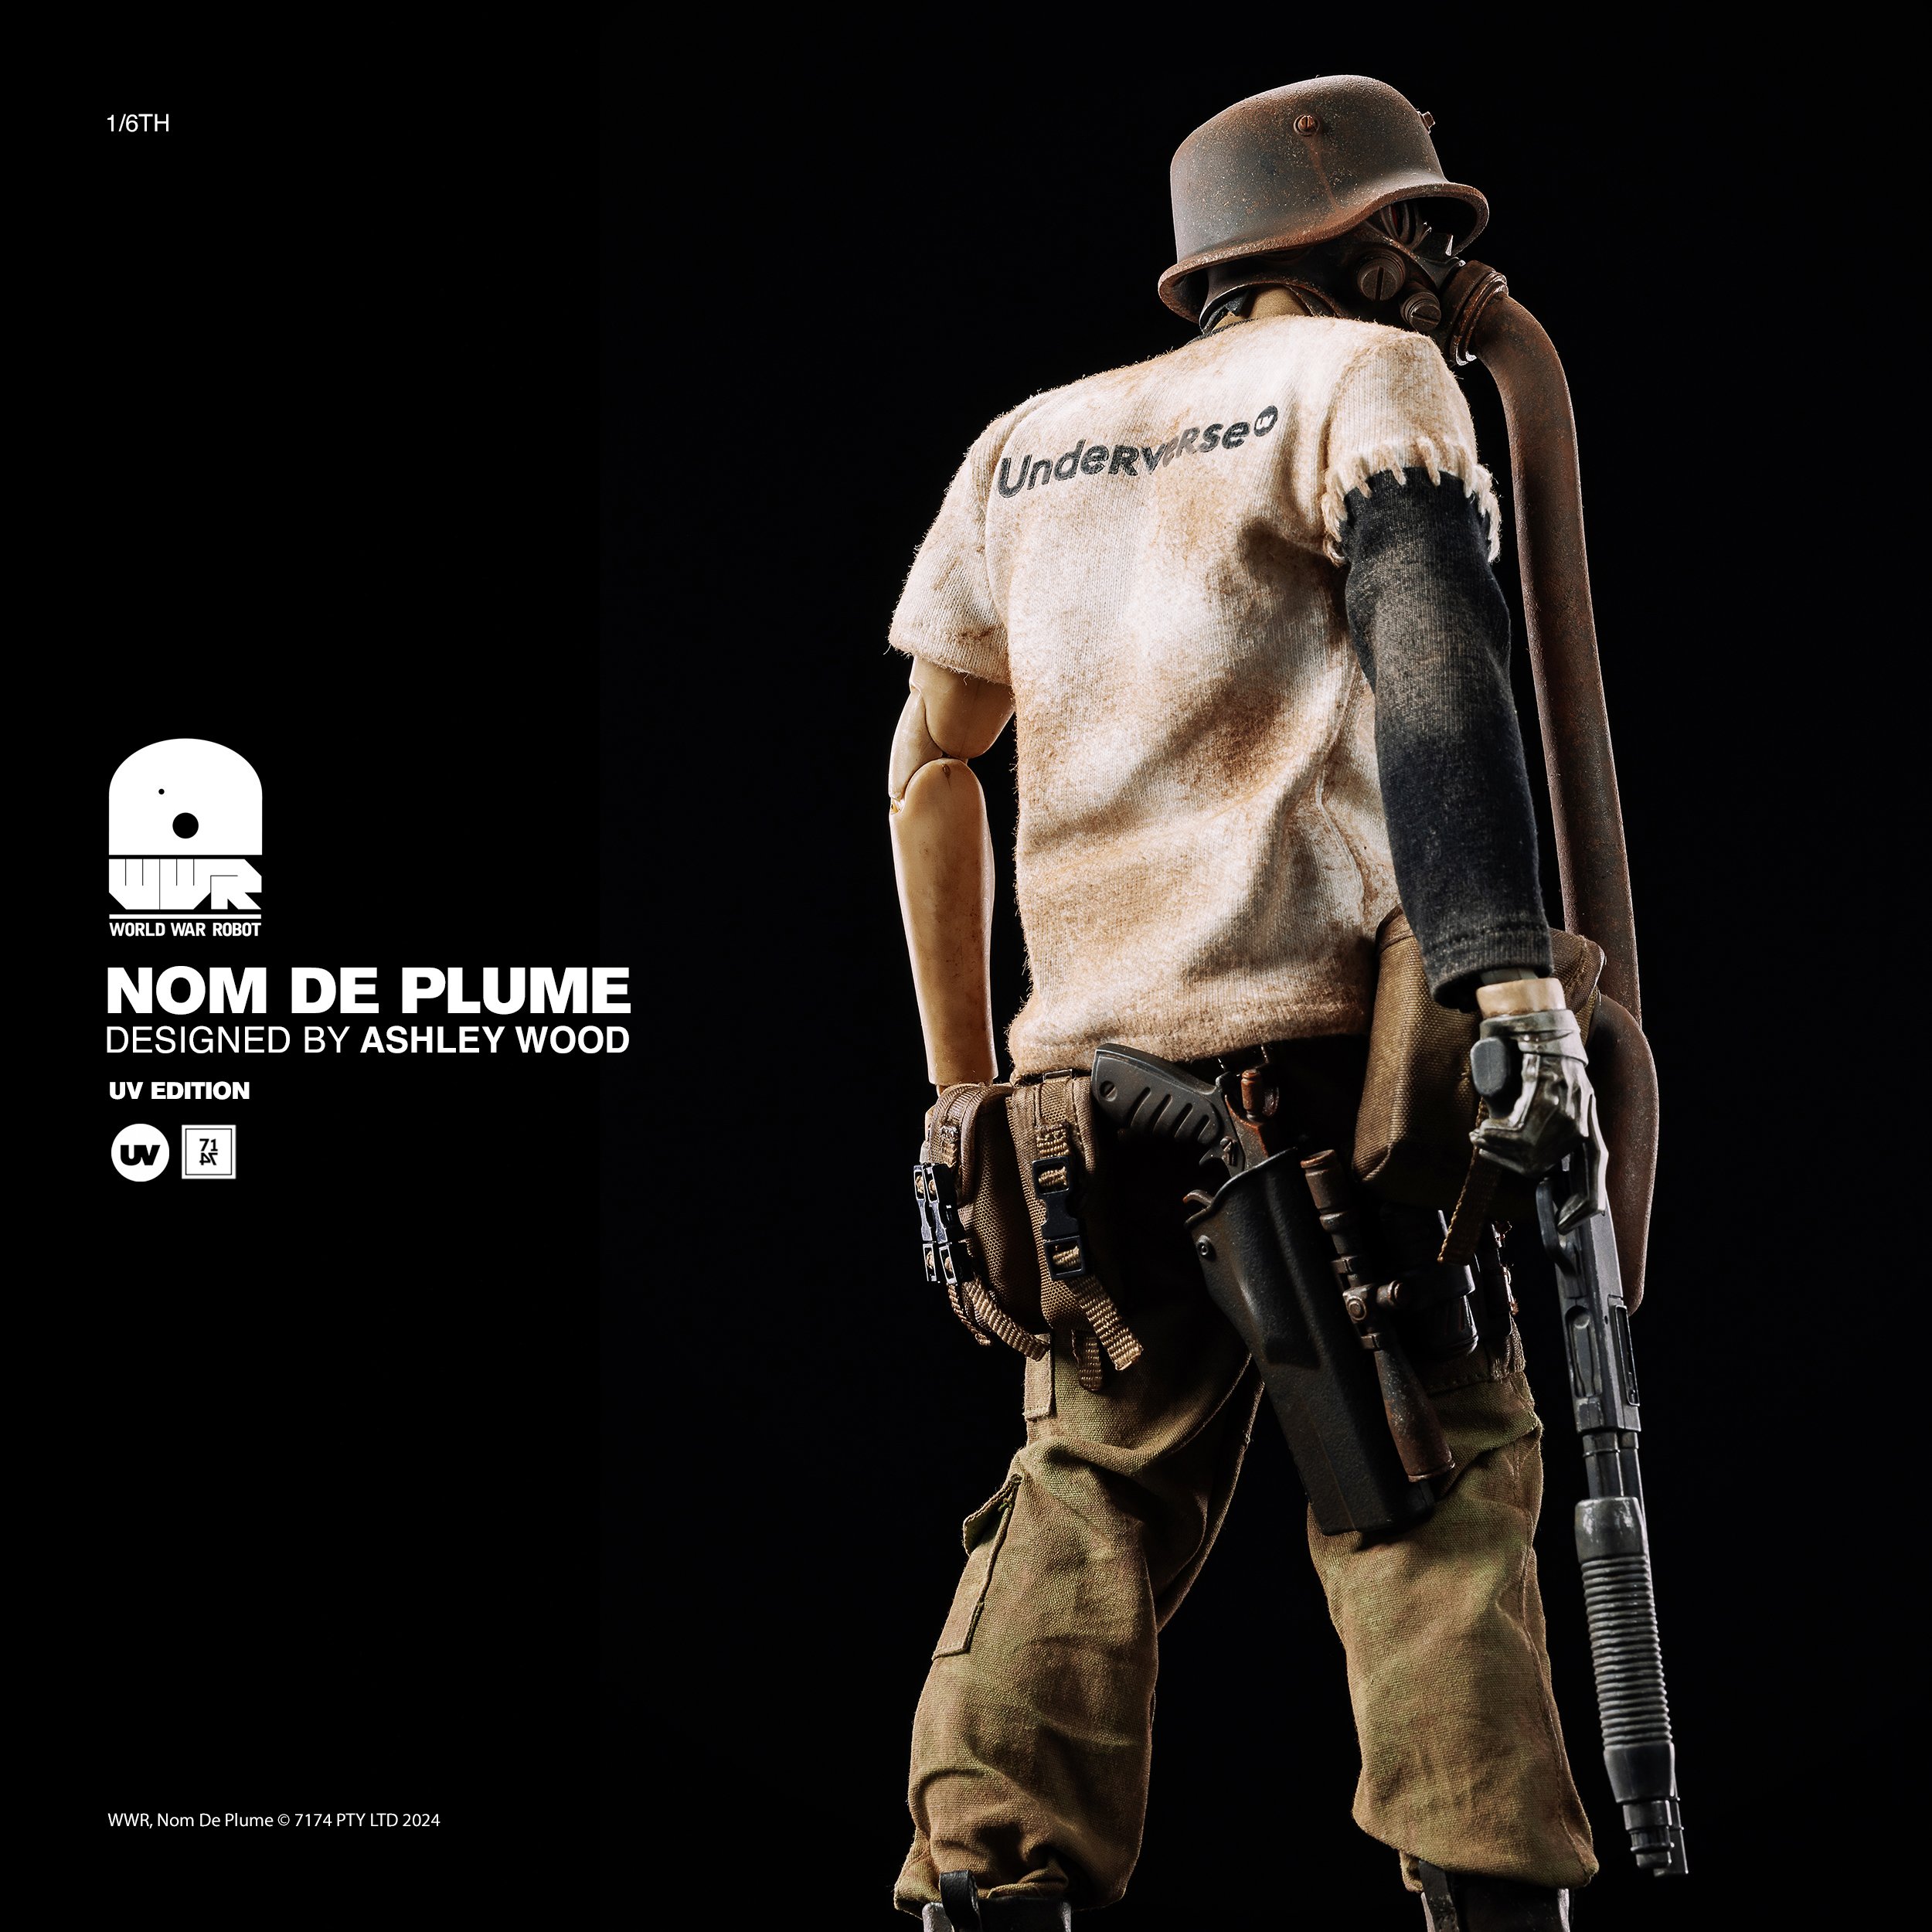 WWR Nom de Plume | UV edition Nomde8